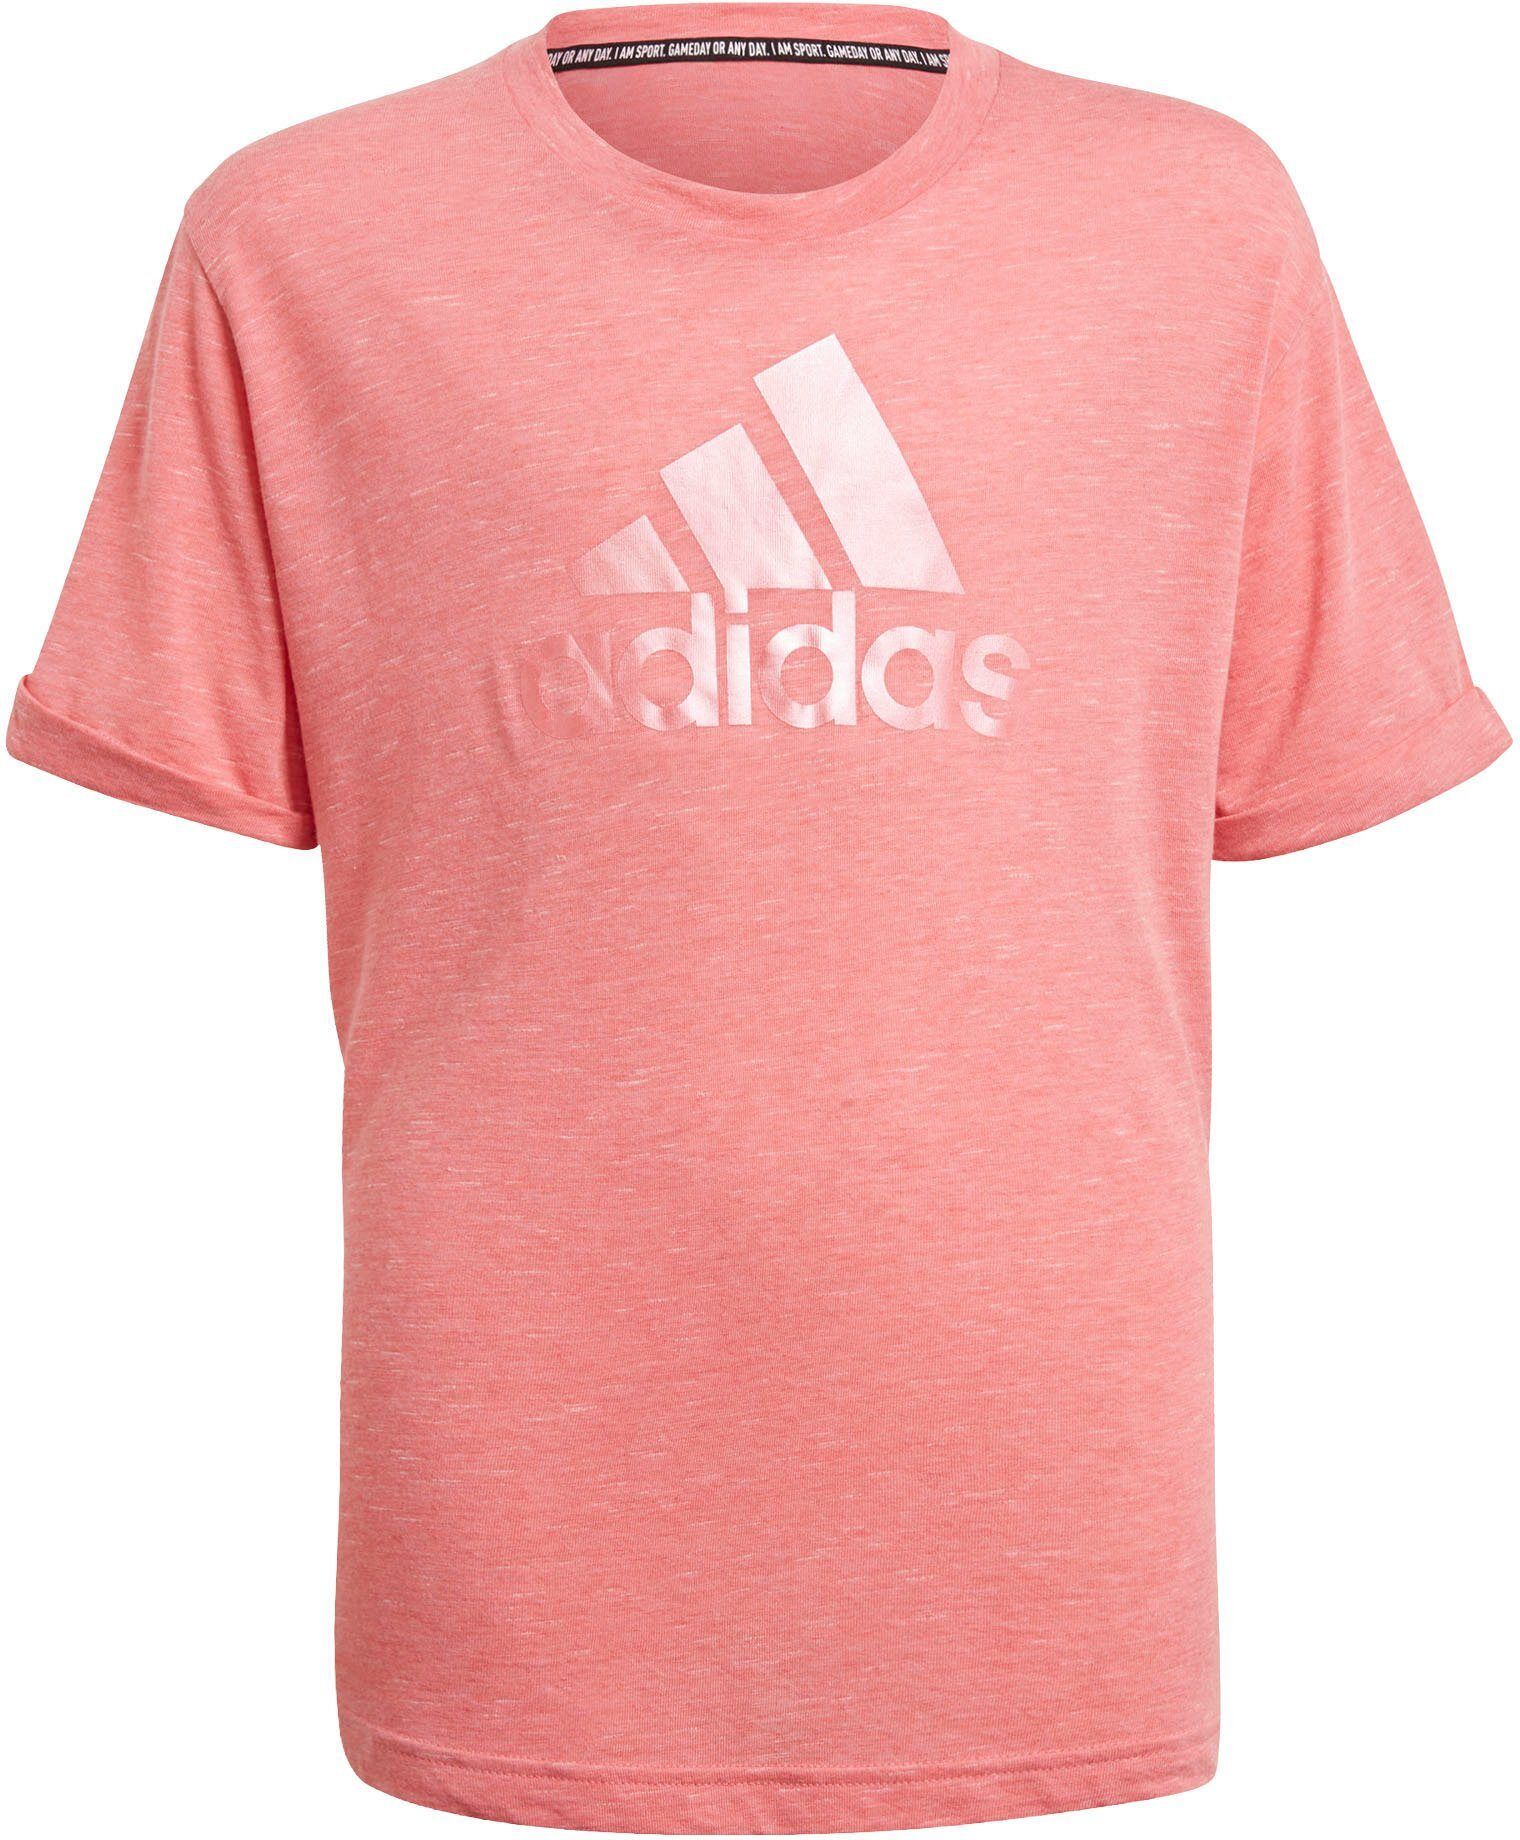 Adidas Performance T-Shirt »G FI Logo Tee«, rosa-meliert